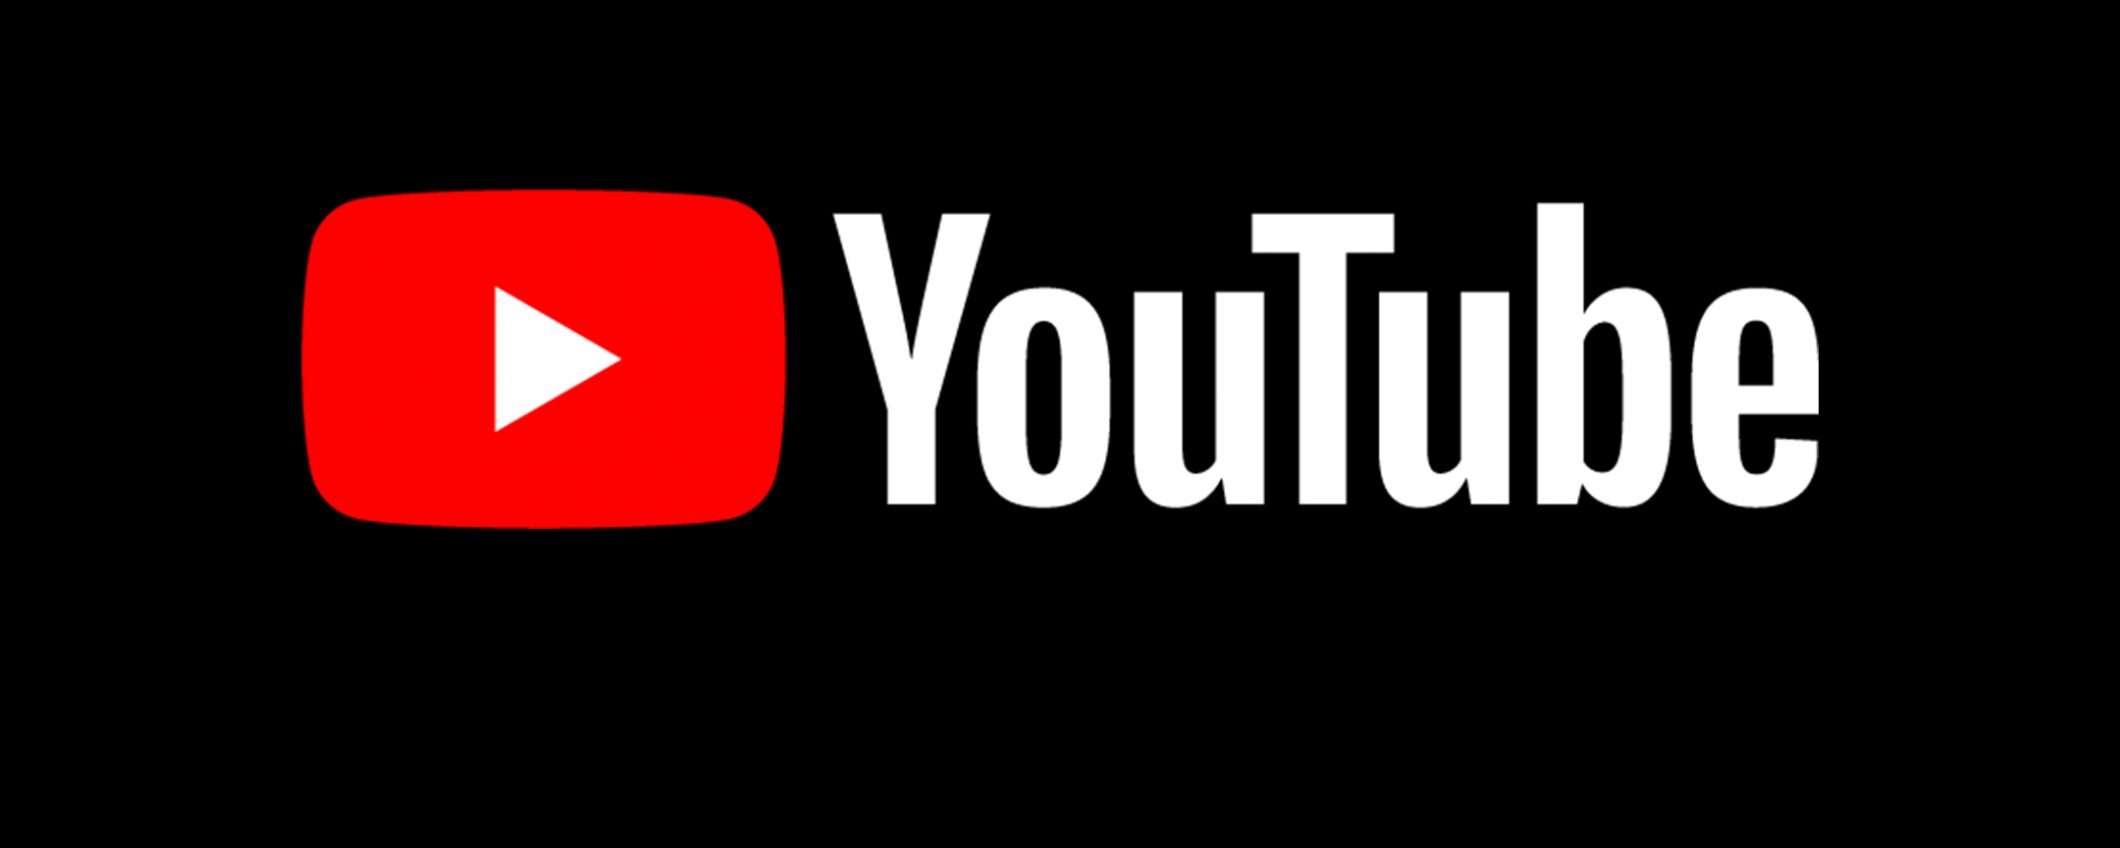 Video YouTube usati per distribuire malware